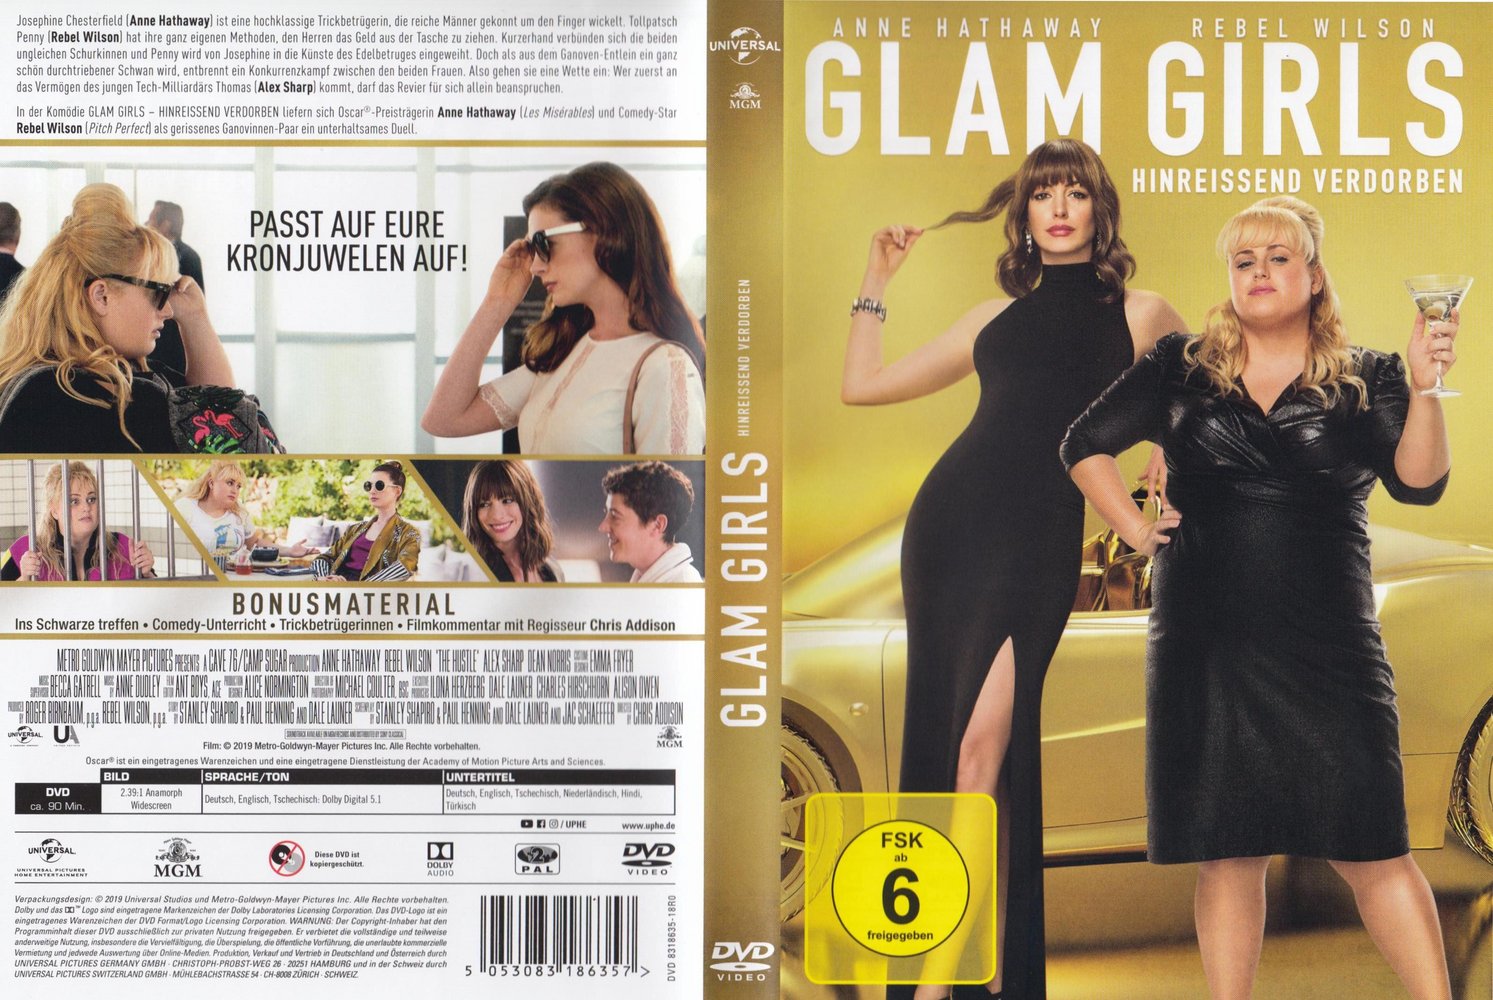 Glam Girls - Hinreissend verdorben [Region Free] [Blu-ray]